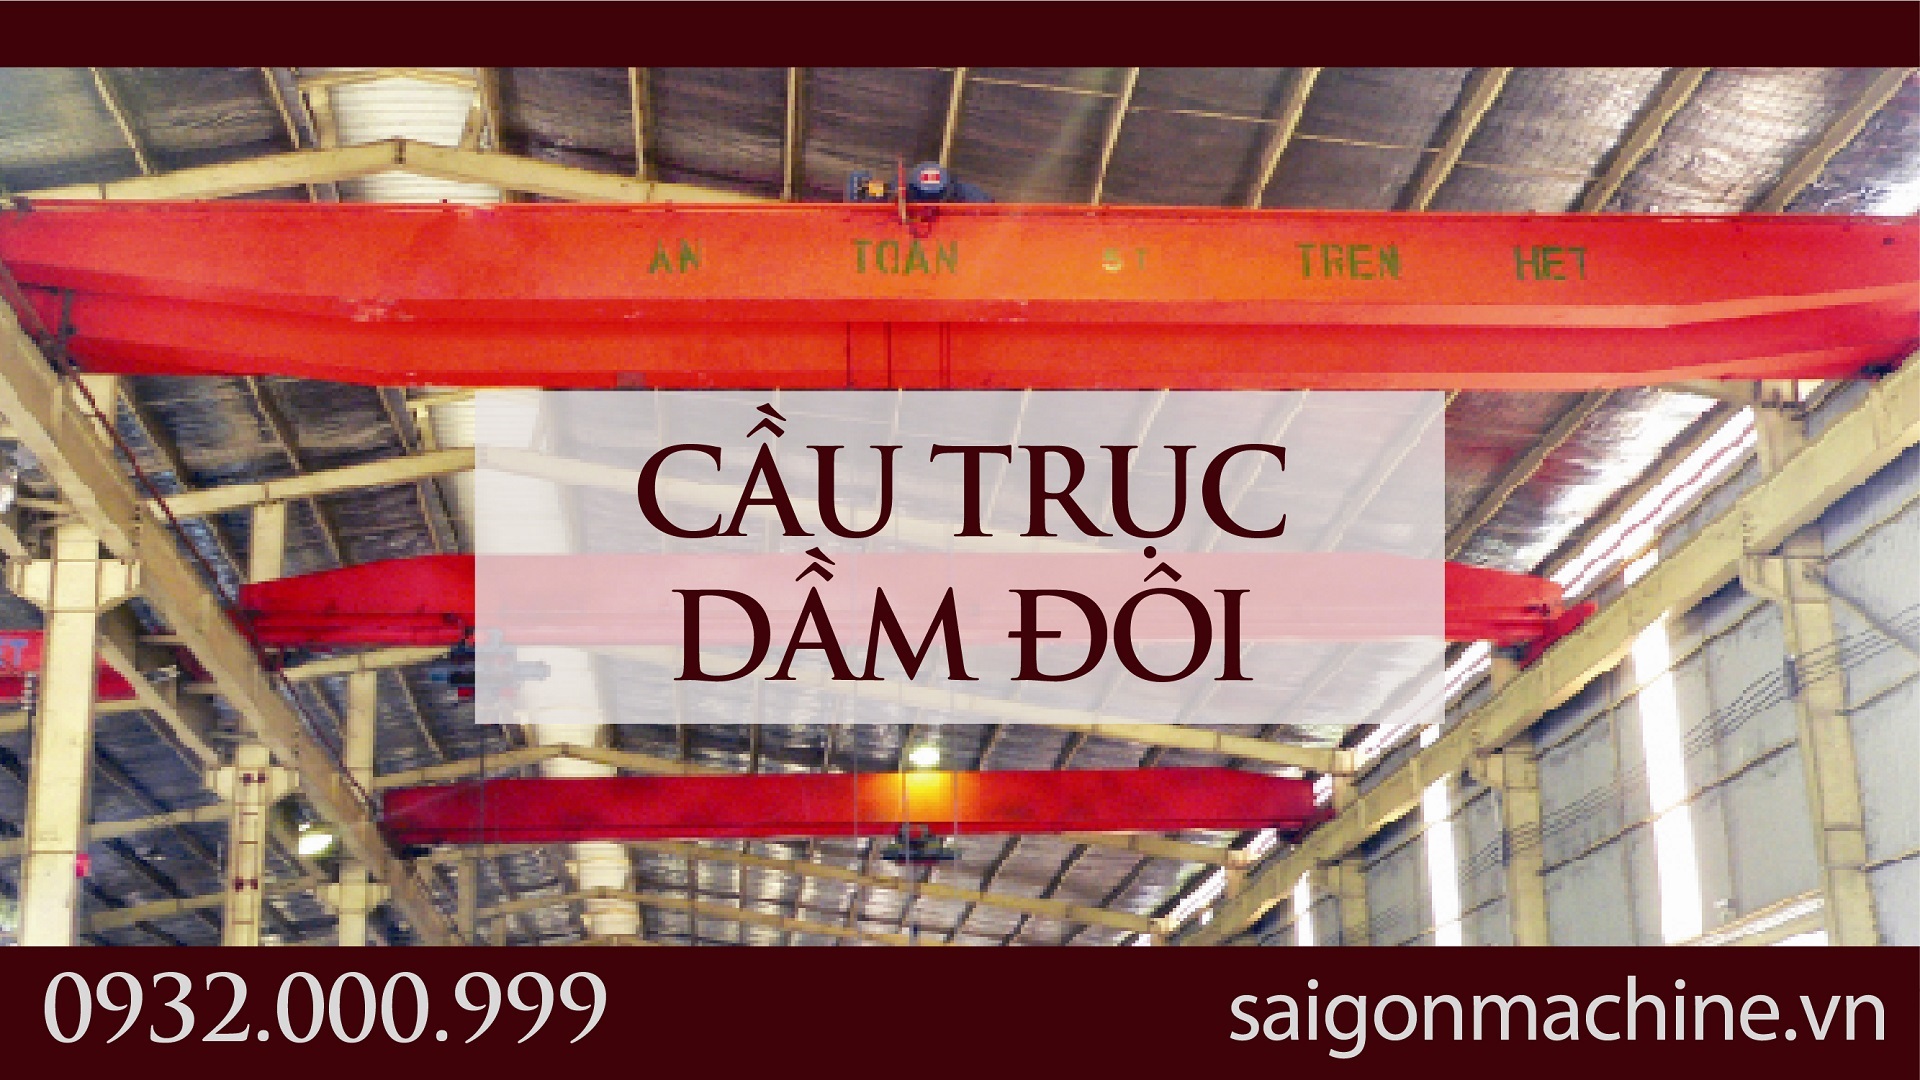 Cầu trục dầm đôi | double girder overhead crane - Palang| #SaigonMachine - #SGM #cautruc #palang